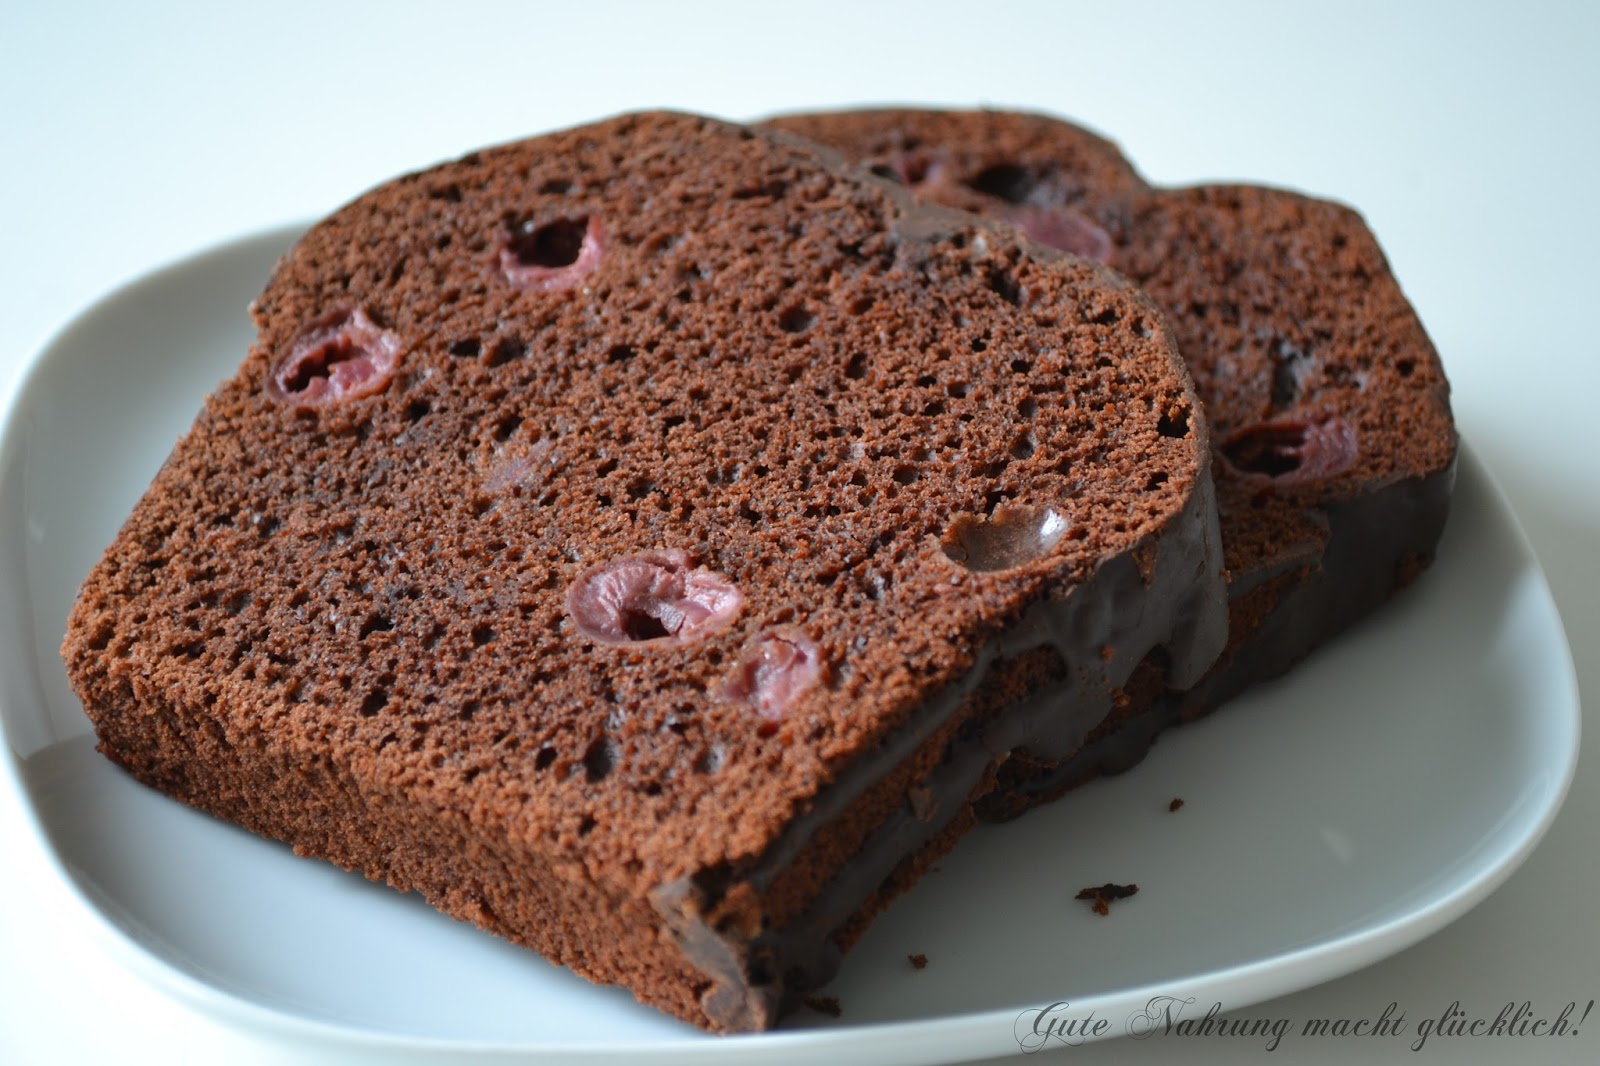 Gute Nahrung macht glücklich : Schokoladiger Kastenkuchen mit Sauerkirschen